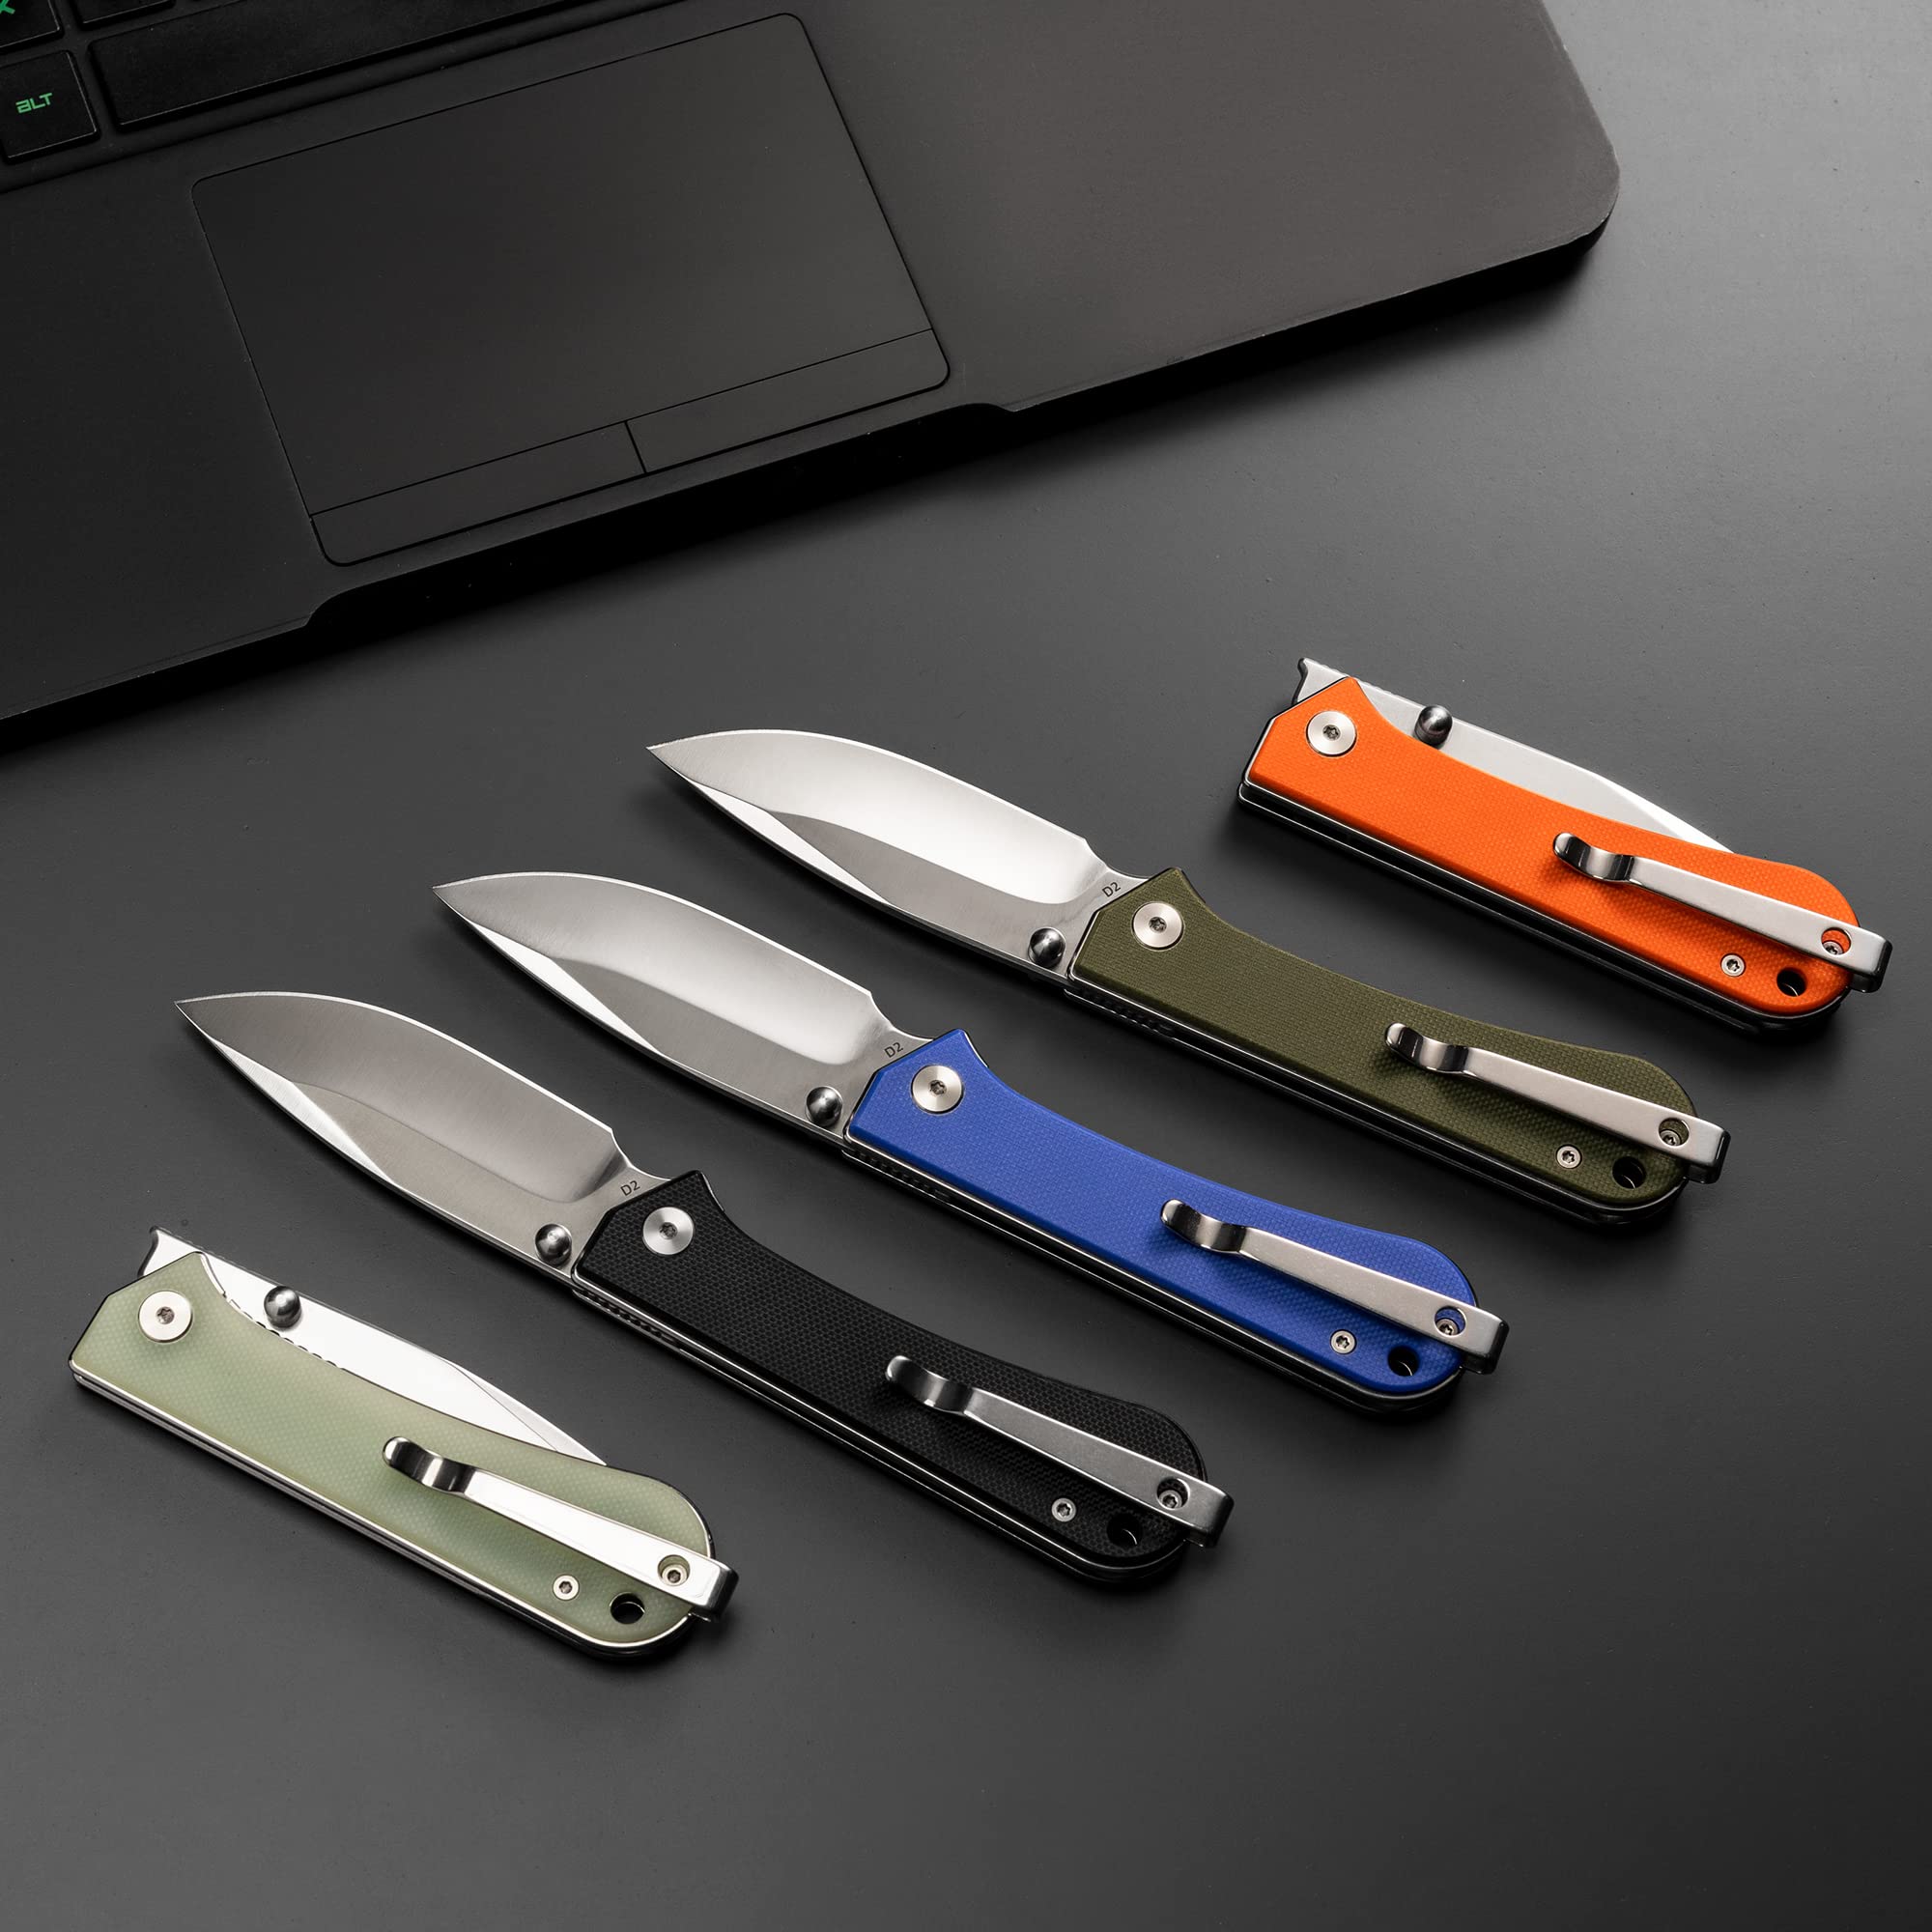 NUKNIVES S13 Kumpanter Small Folding Pocket Knife - 3 Inch D2 Folding knife and G10 EDC Pocket Knife with Clip - Pocket knives & Folding Knives for Men and Women - Black